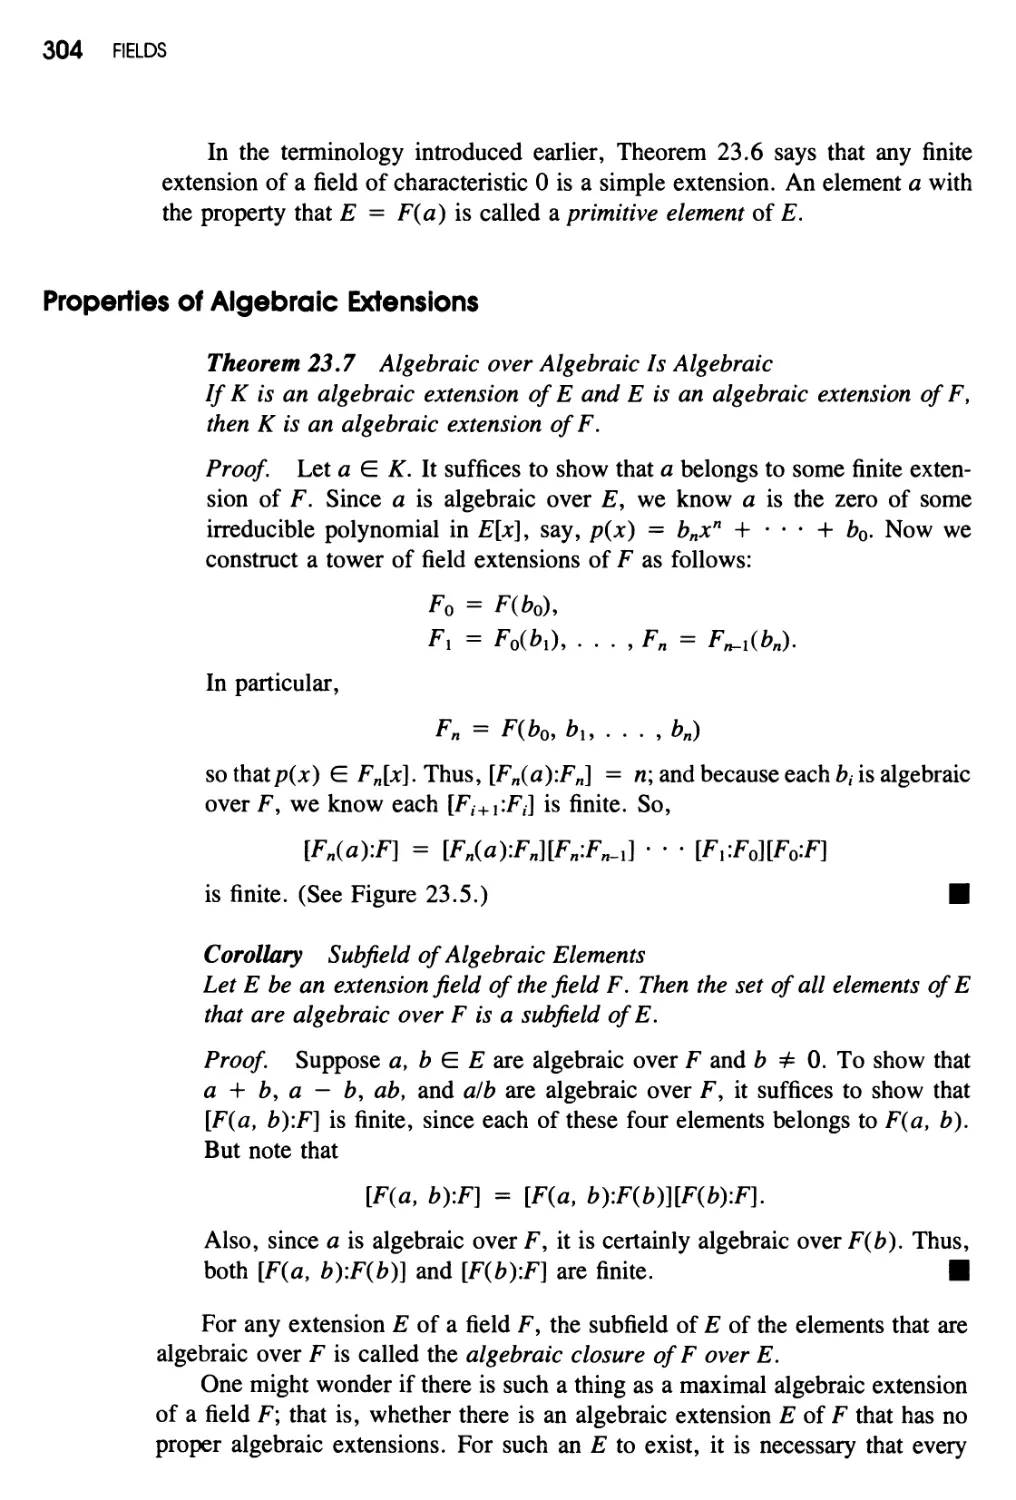 Properties of Algebraic Extensions